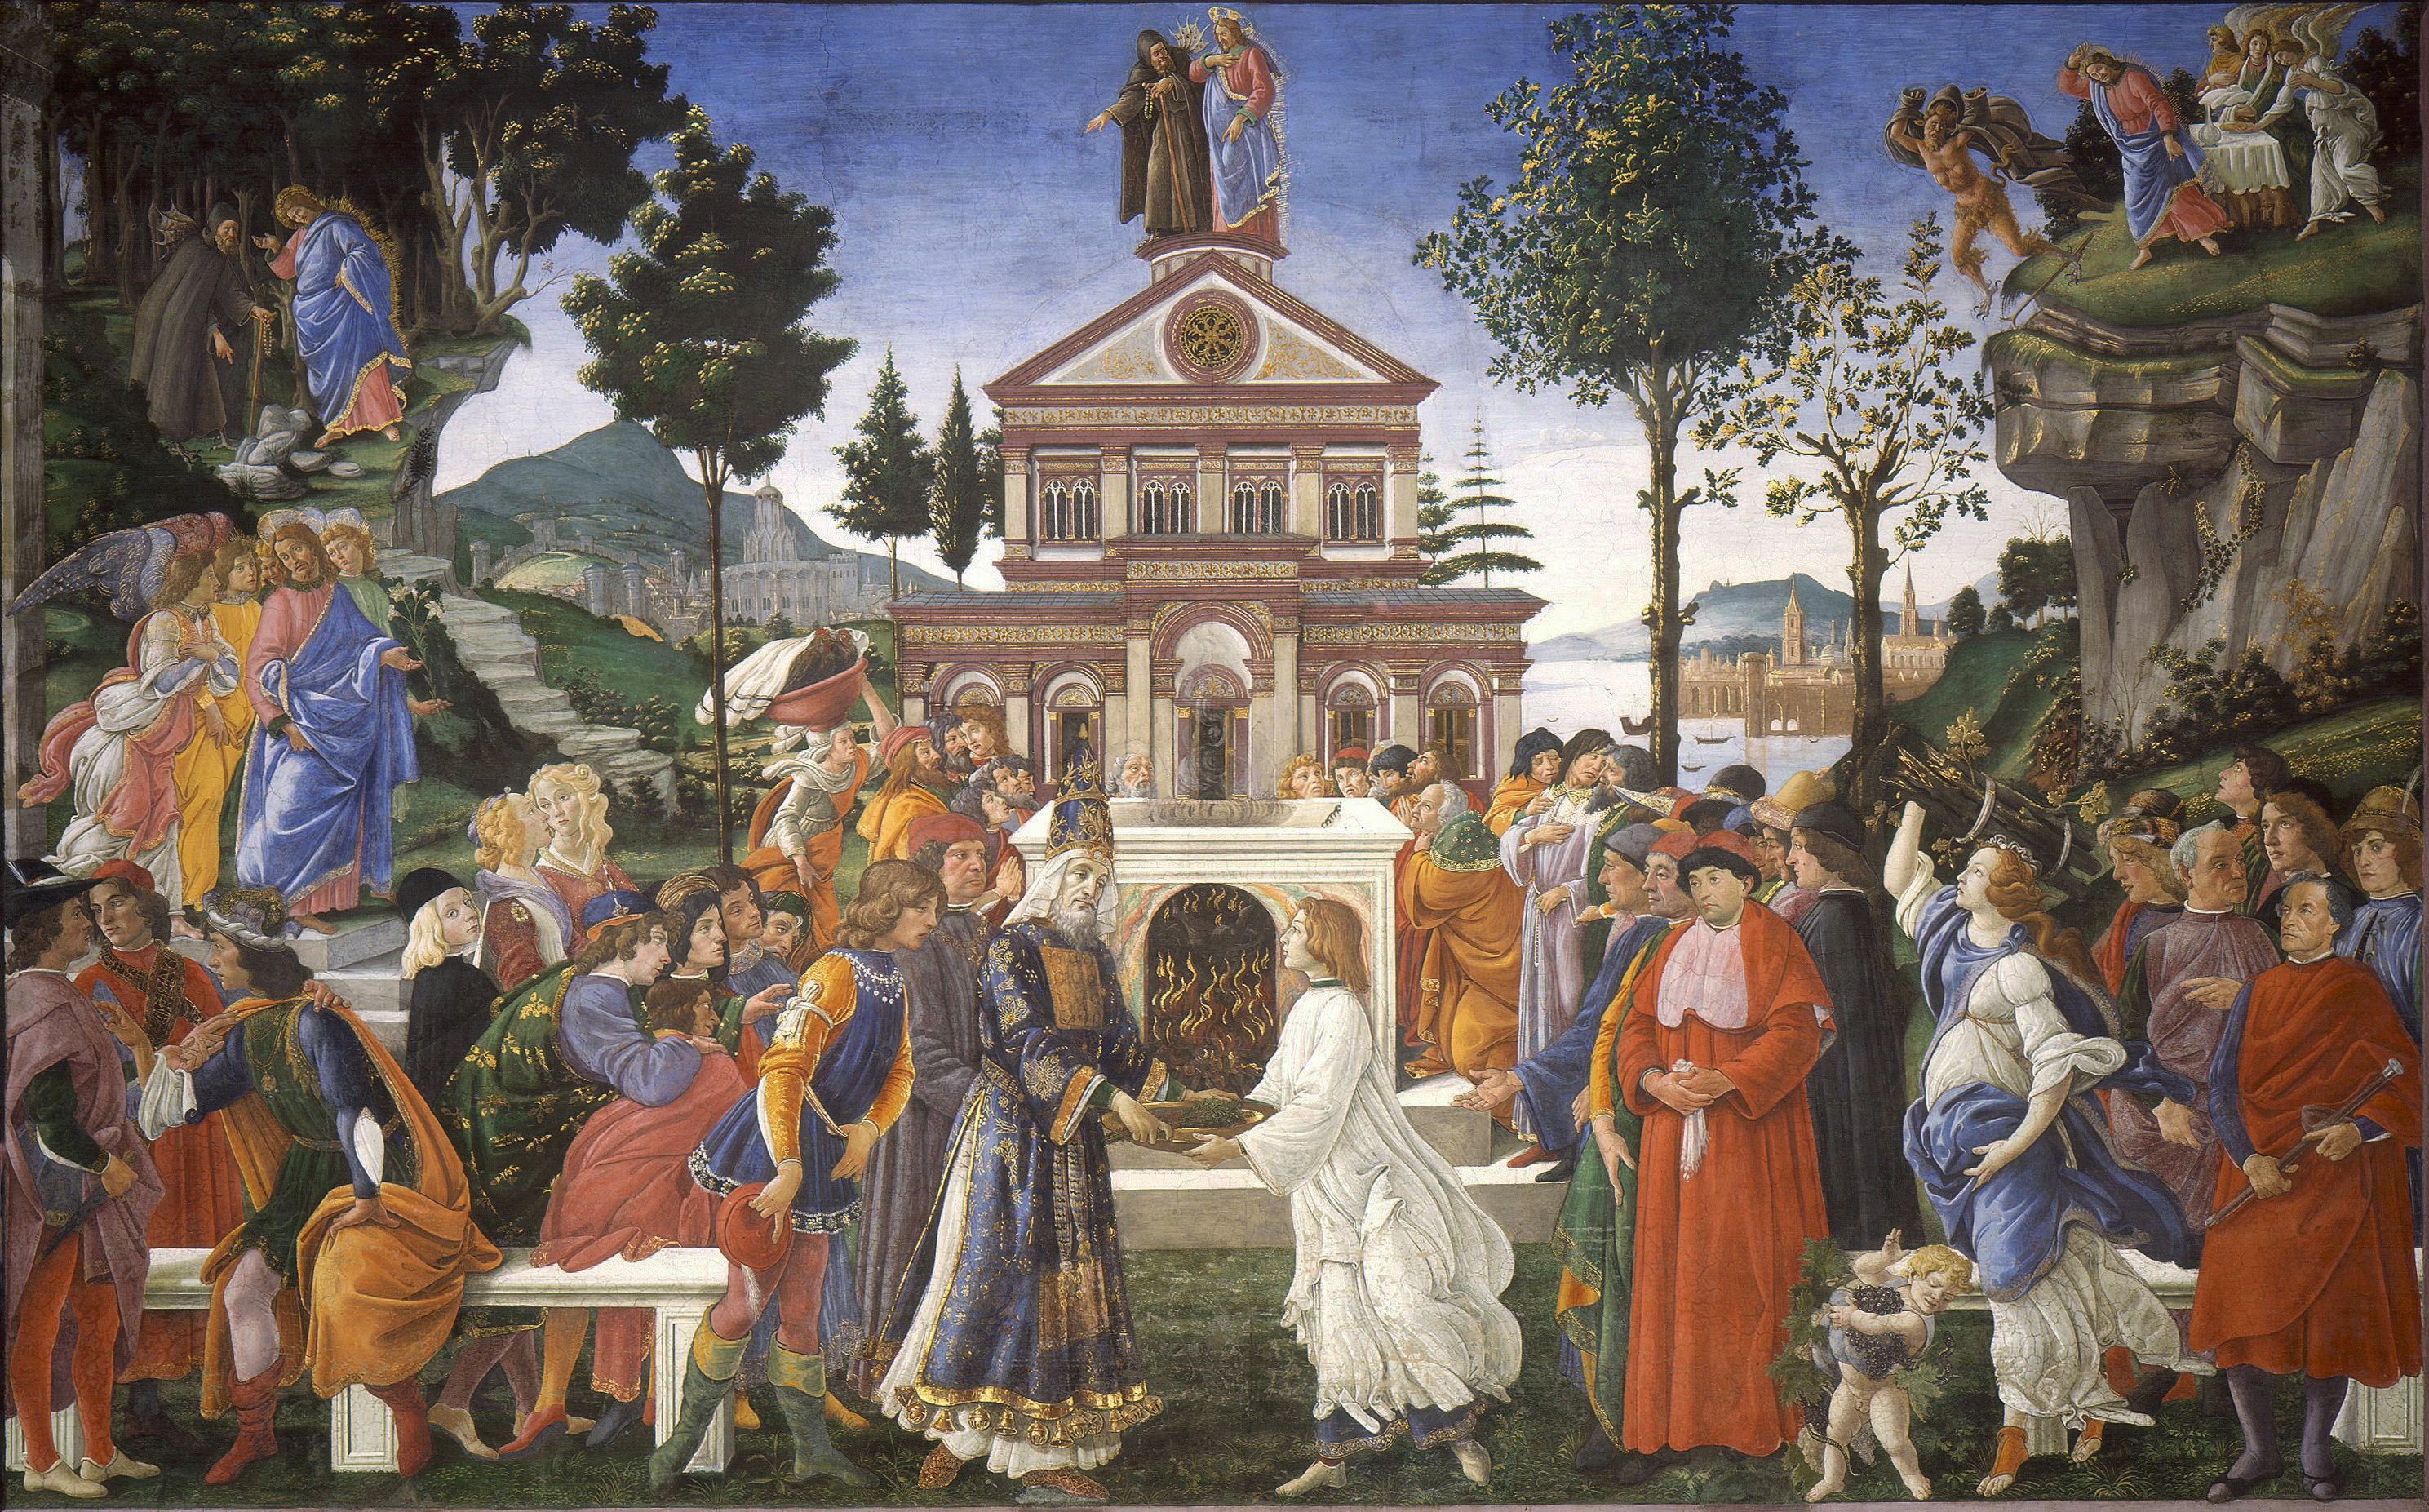 システィーナ礼拝堂の壁画 『キリストの誘惑』 【1482】